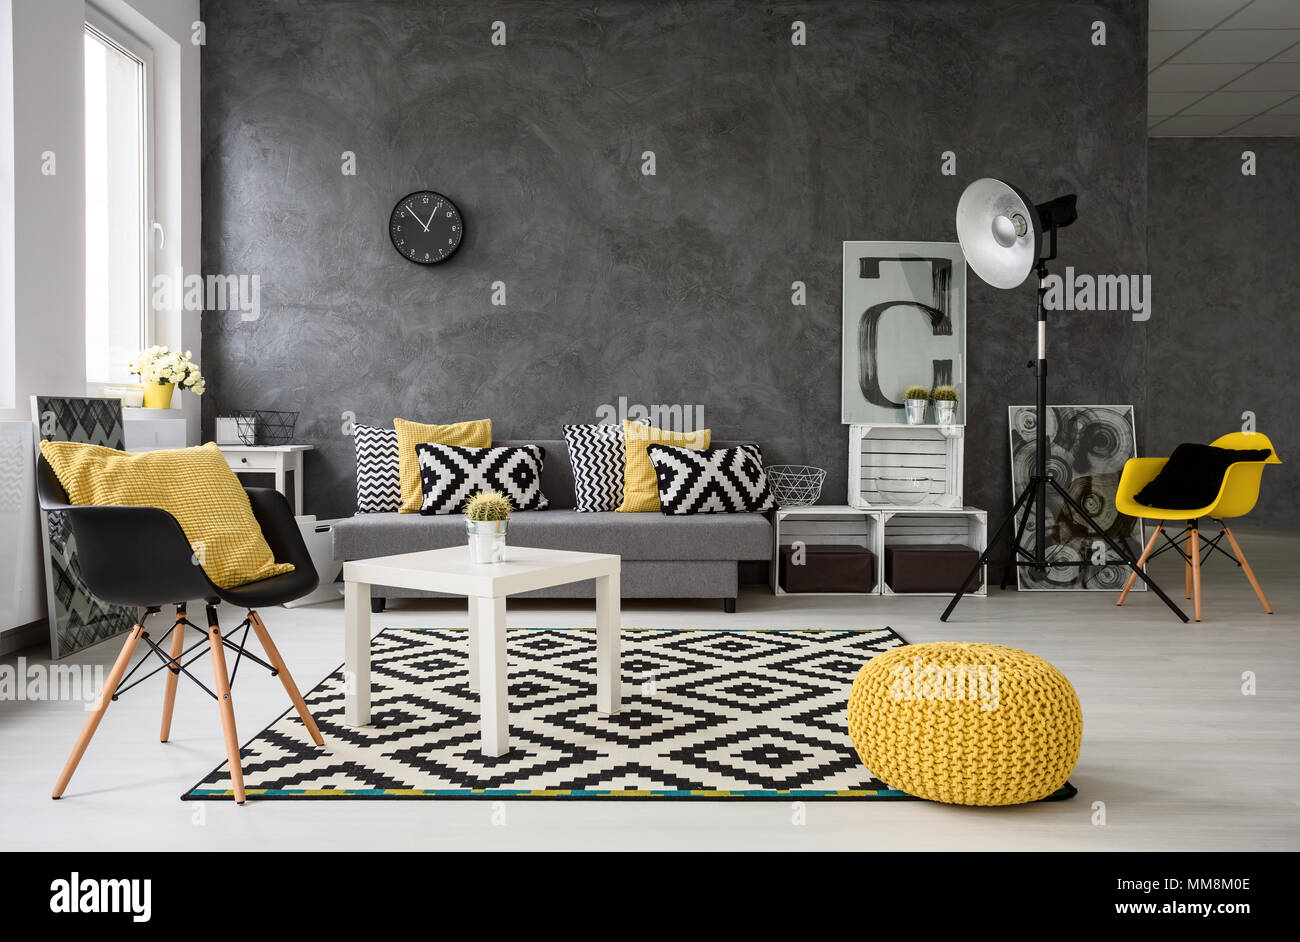 Geräumige, grau Wohnzimmer mit Sofa, Stühle, Stehlampe, kleiner Tisch,  Dekorationen in Gelb, Schwarz und Weiß Stockfotografie - Alamy